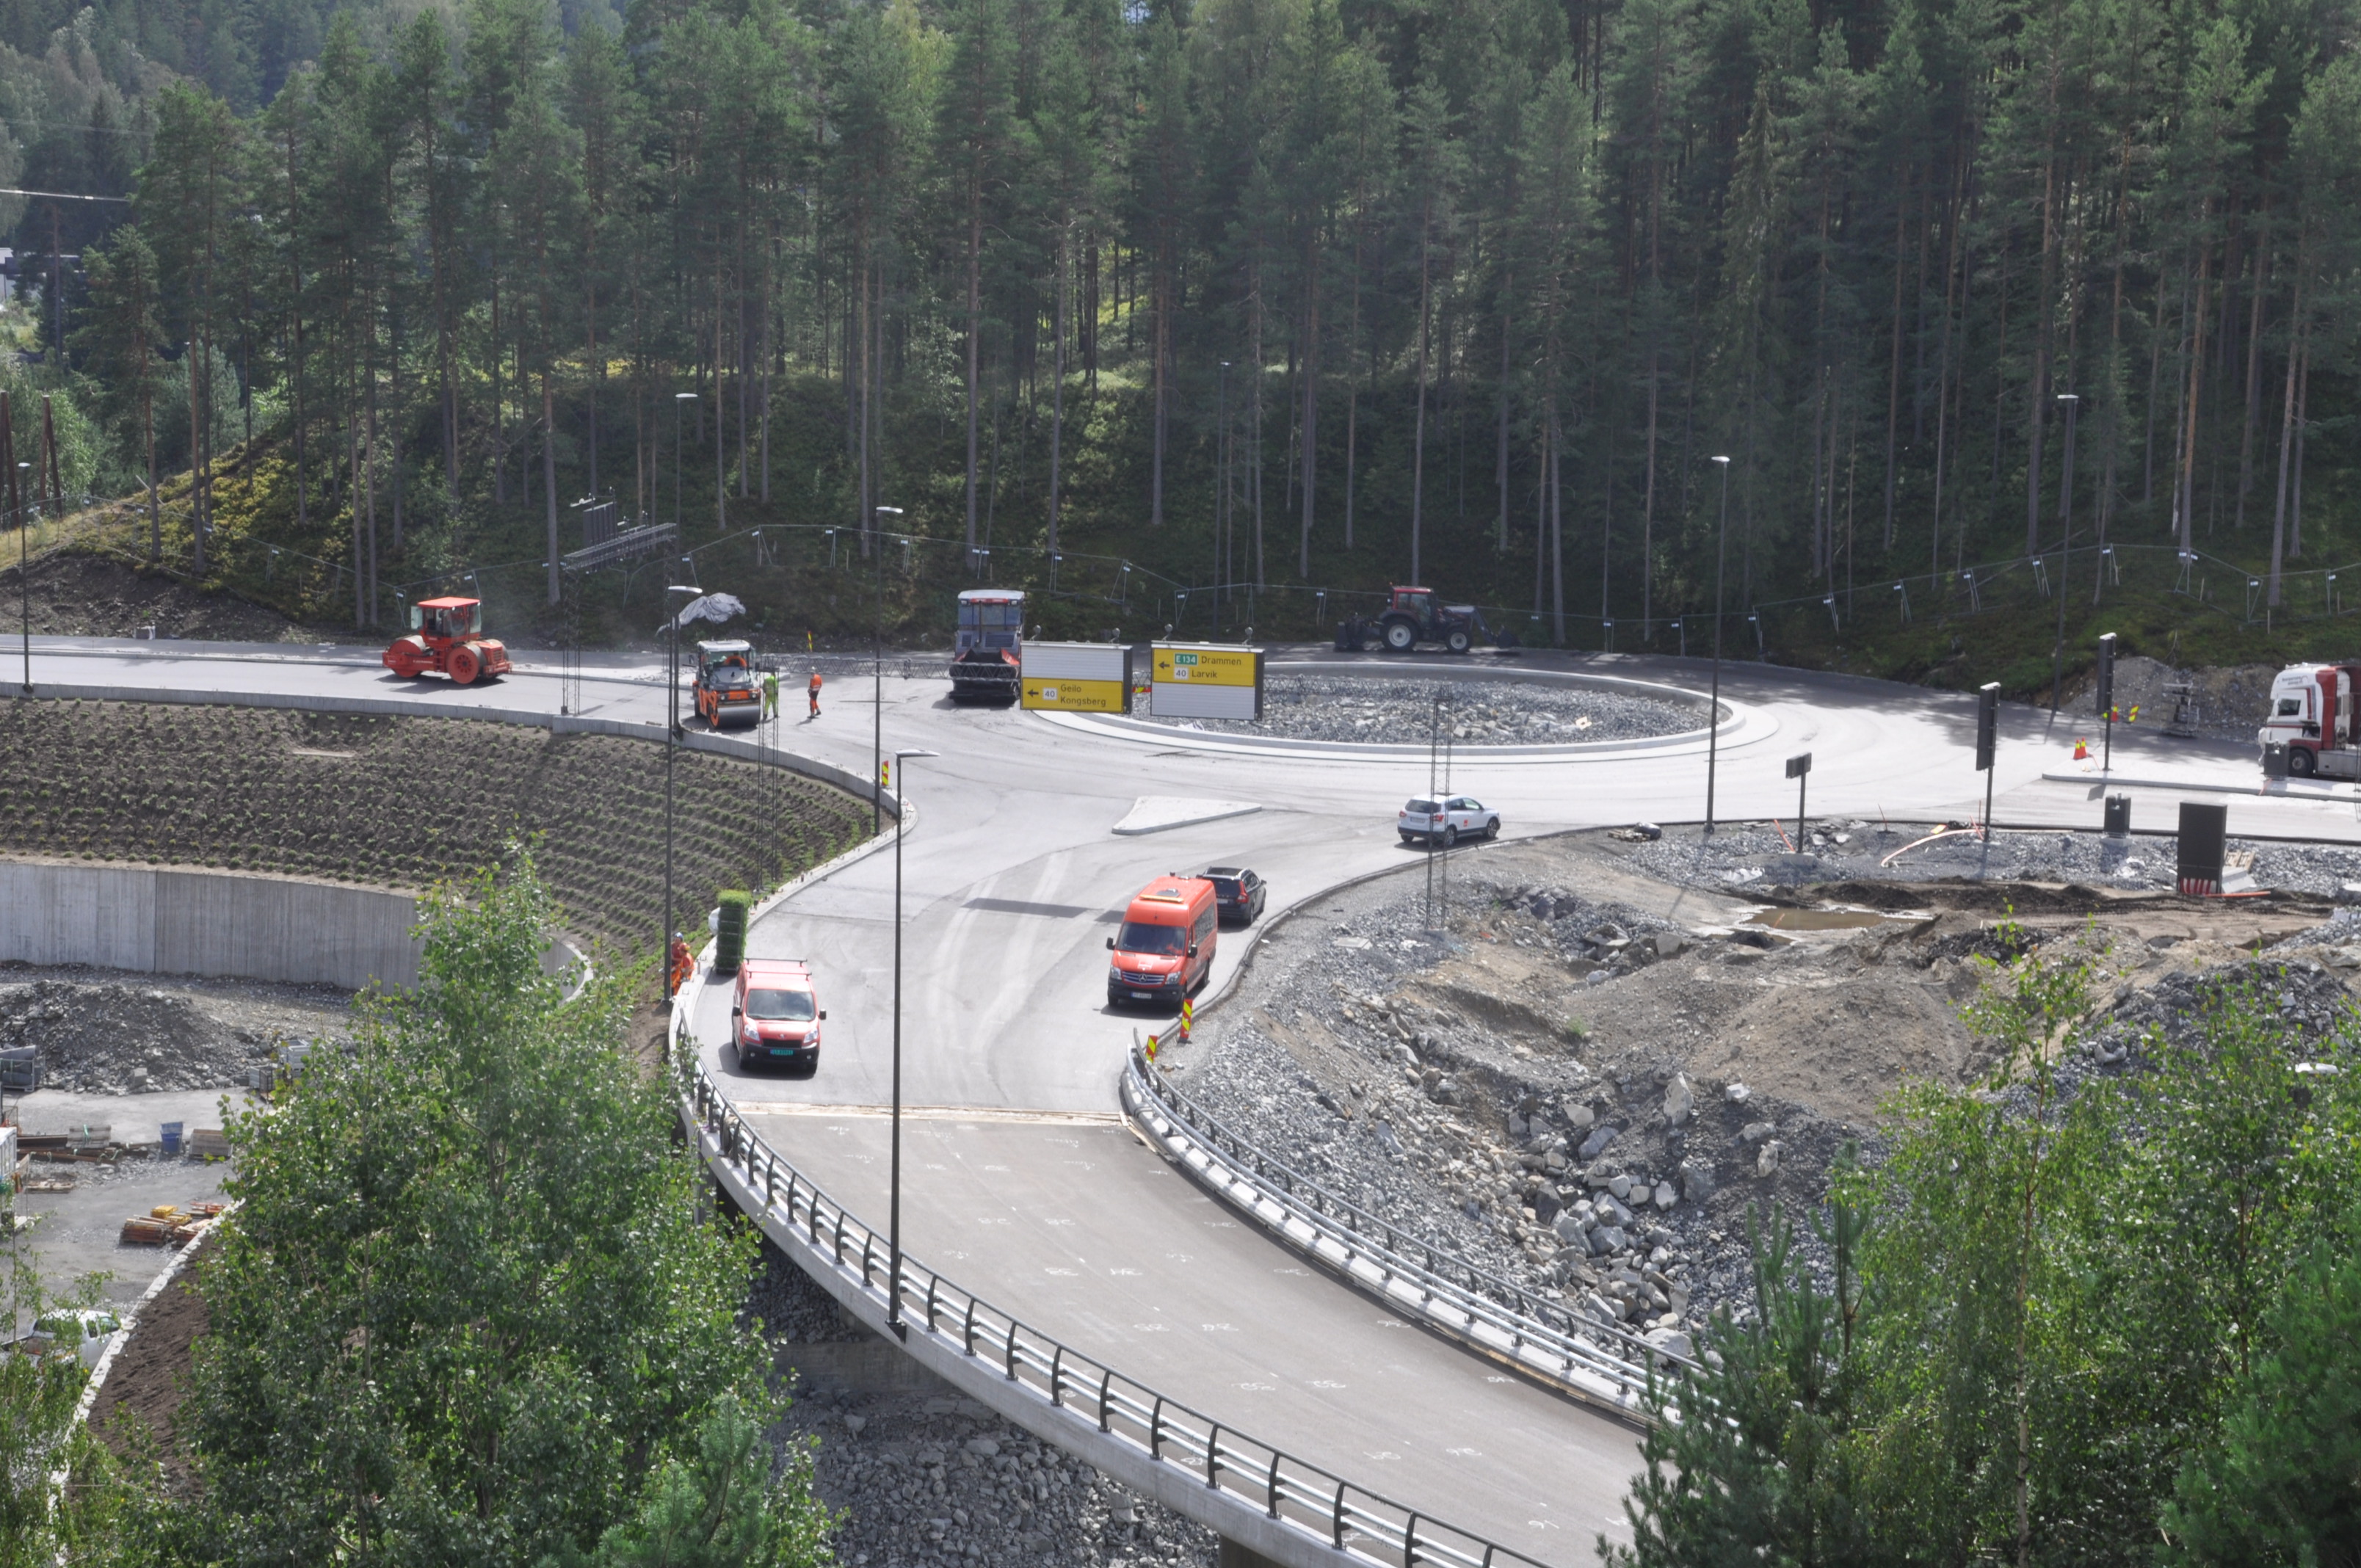 Her ved renseanlegget i Sellikdalen er ny innkjøring til Teknologiparken. (Foto: Kell Wold)